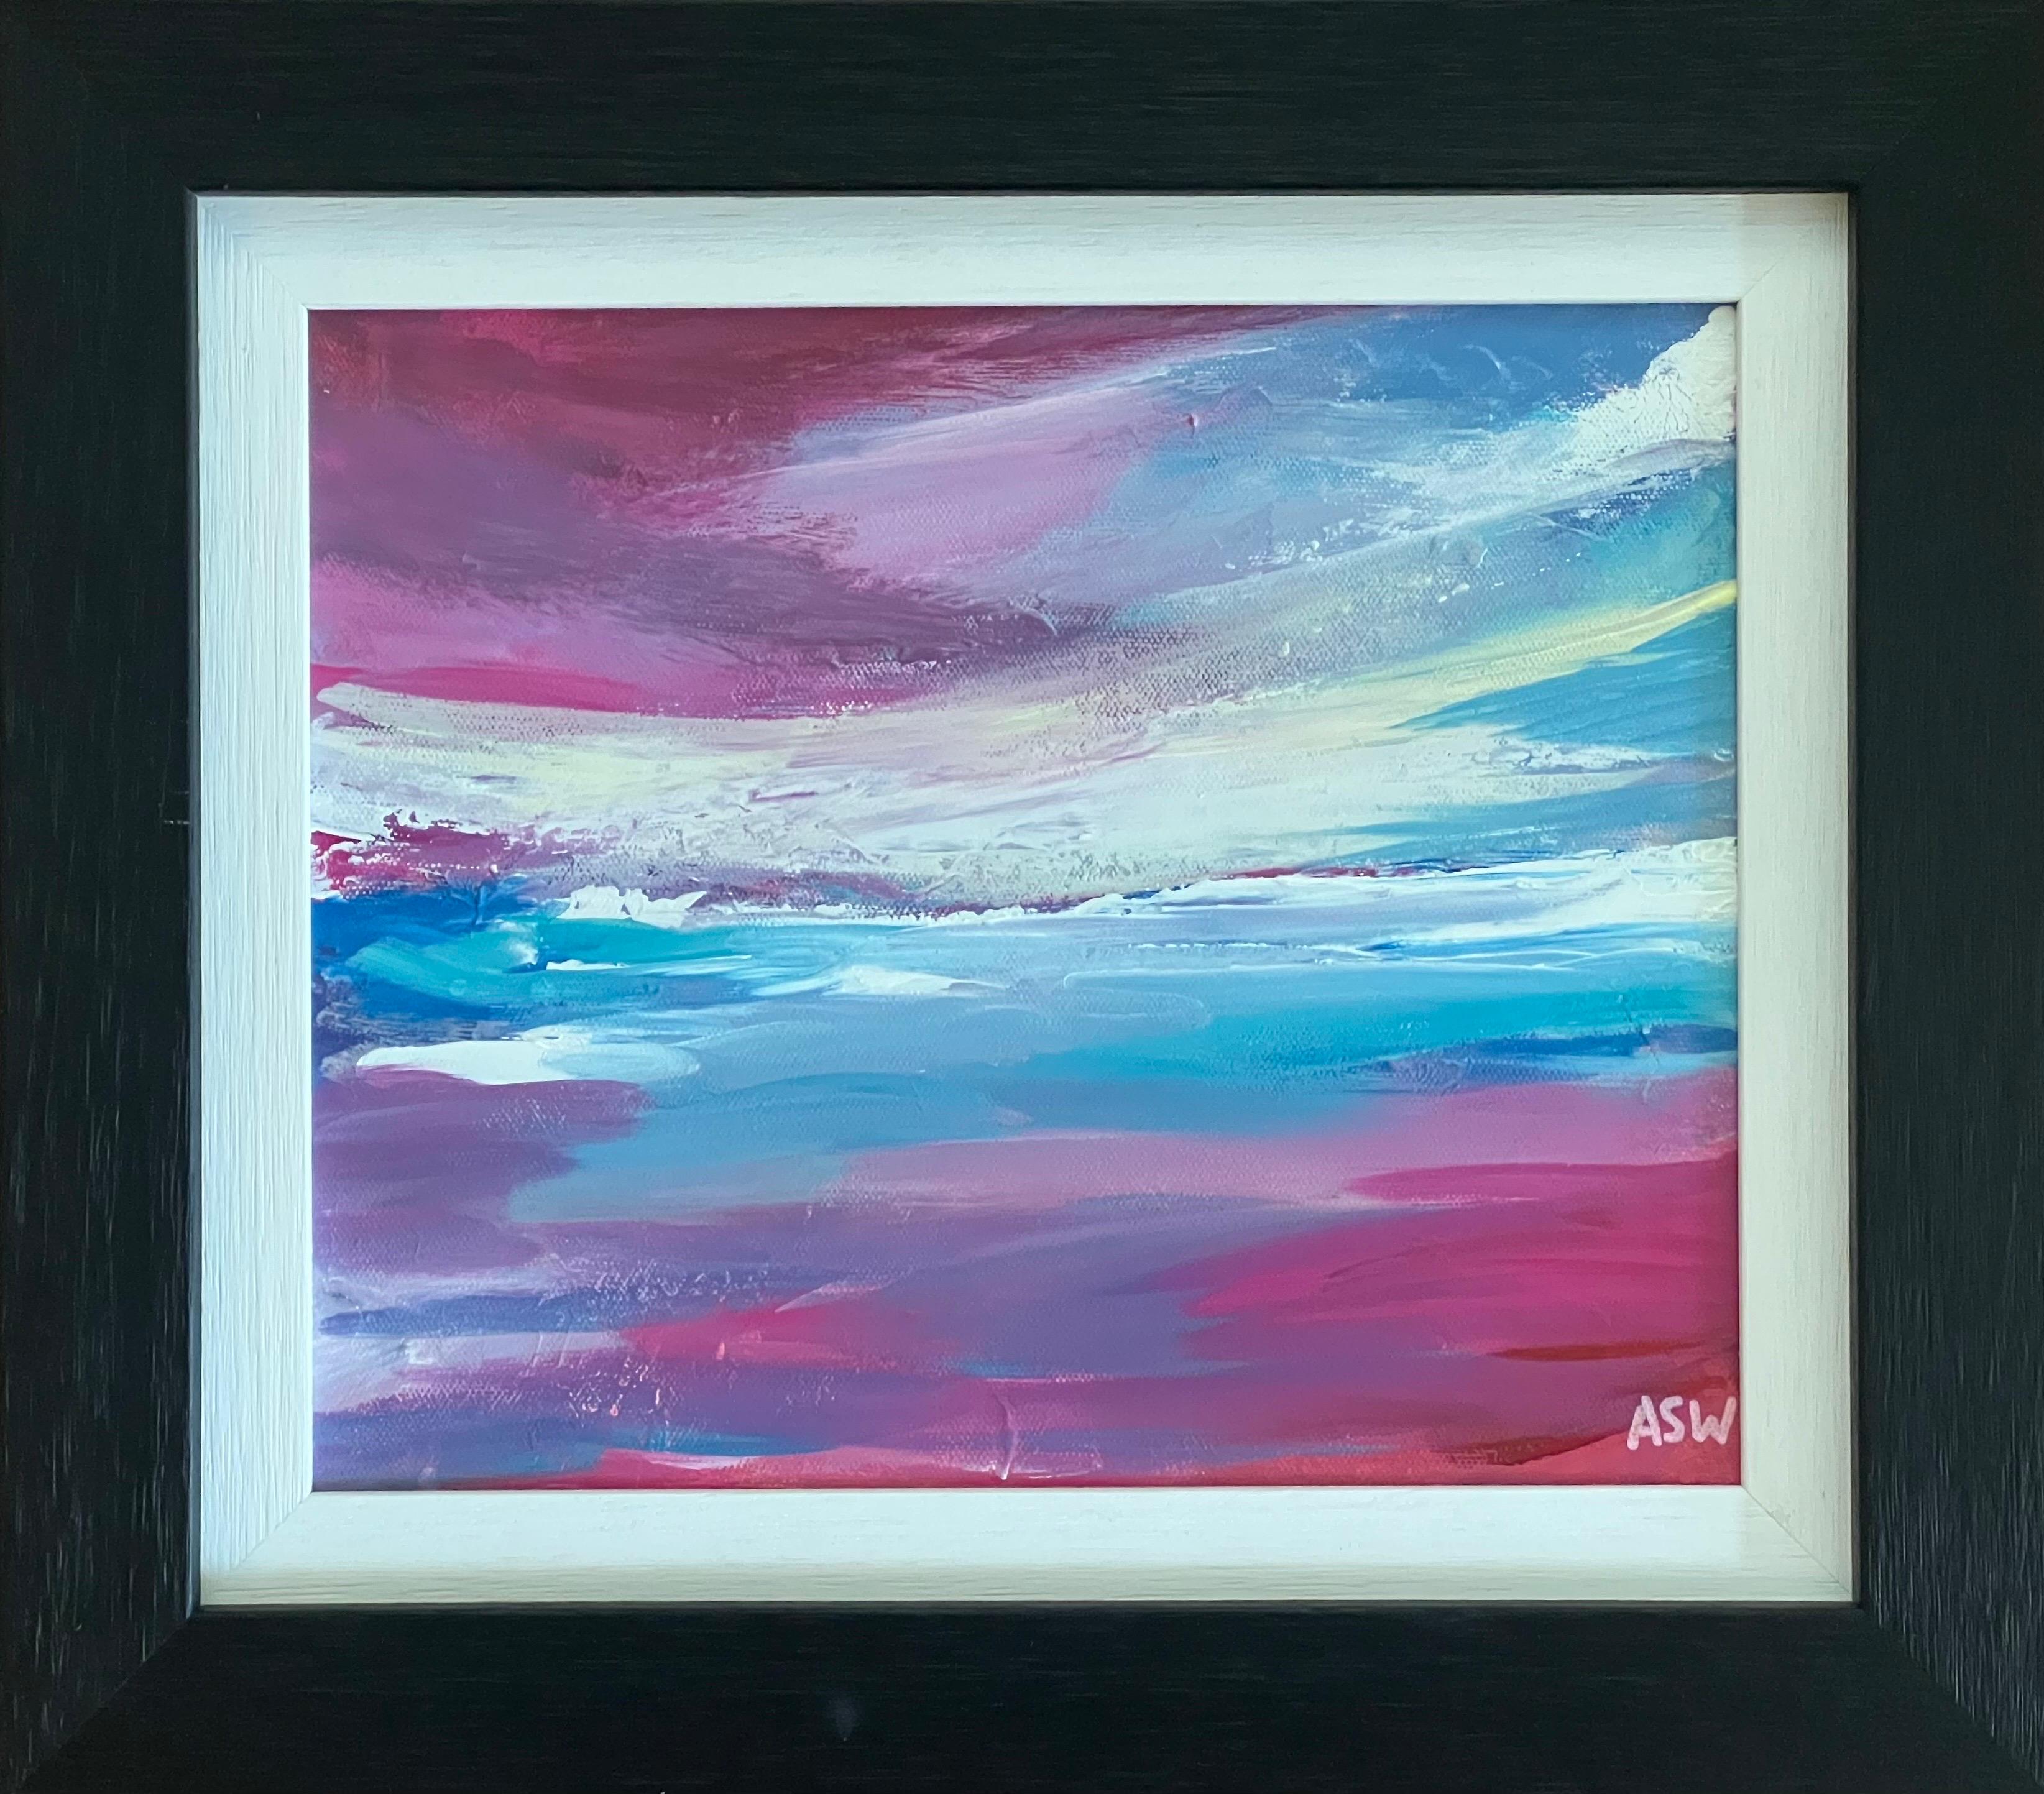 Peinture abstraite de paysage marin avec ciel rose et bleu par un artiste britannique - Impressionnisme abstrait Painting par Angela Wakefield